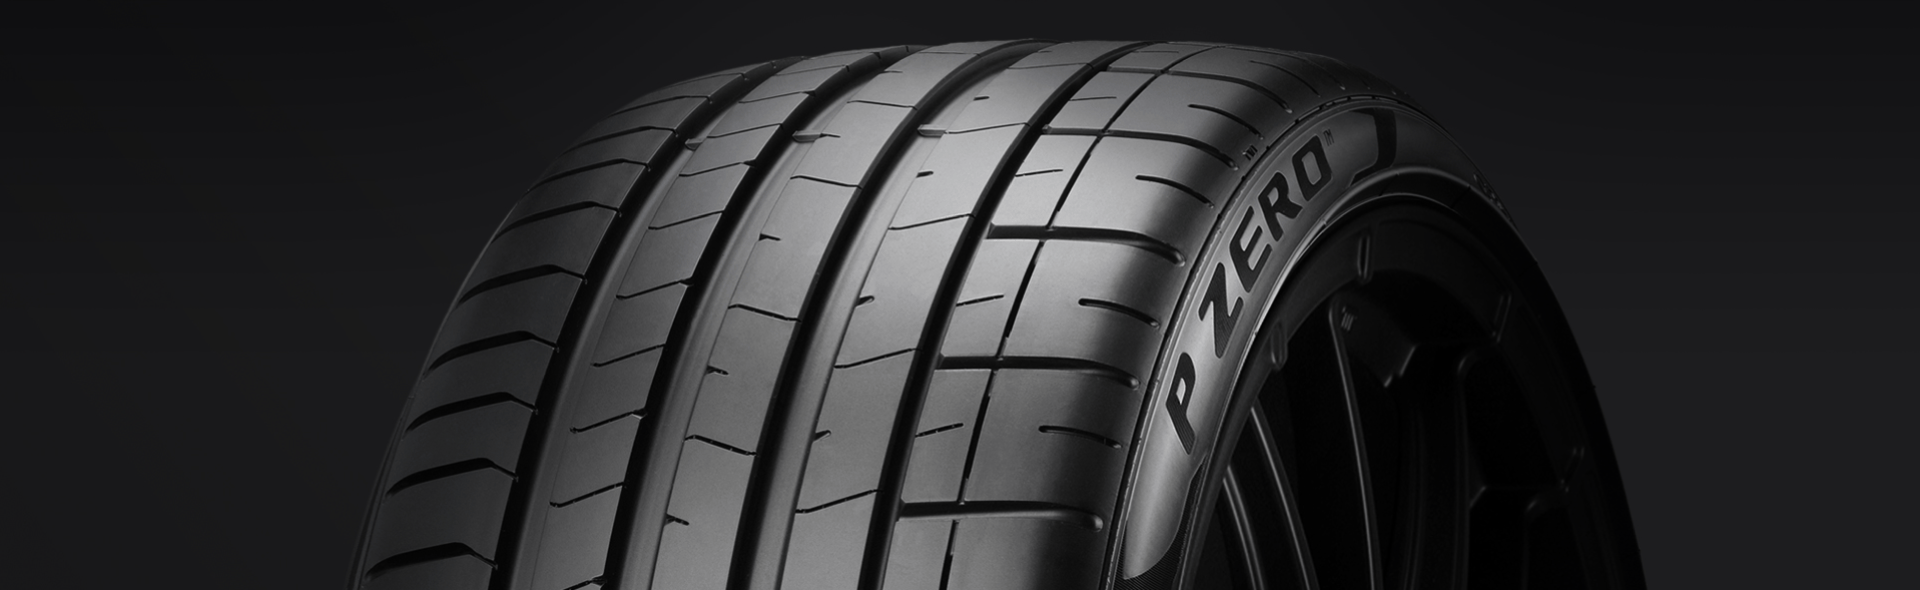 Program guida sicura con gli pneumatici Pirelli